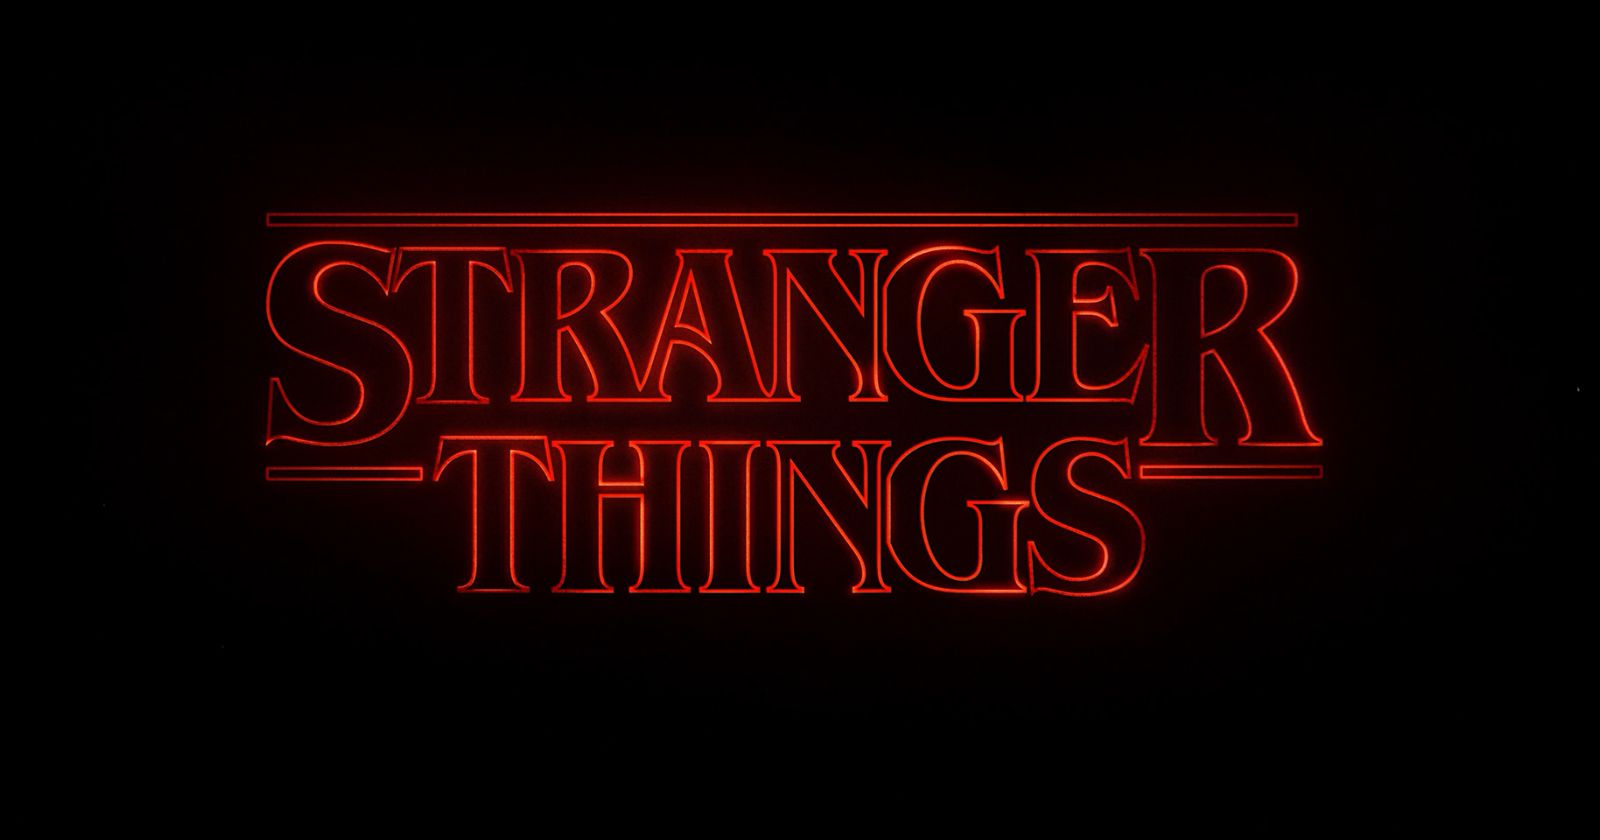 Where Was Stranger Things Filmed